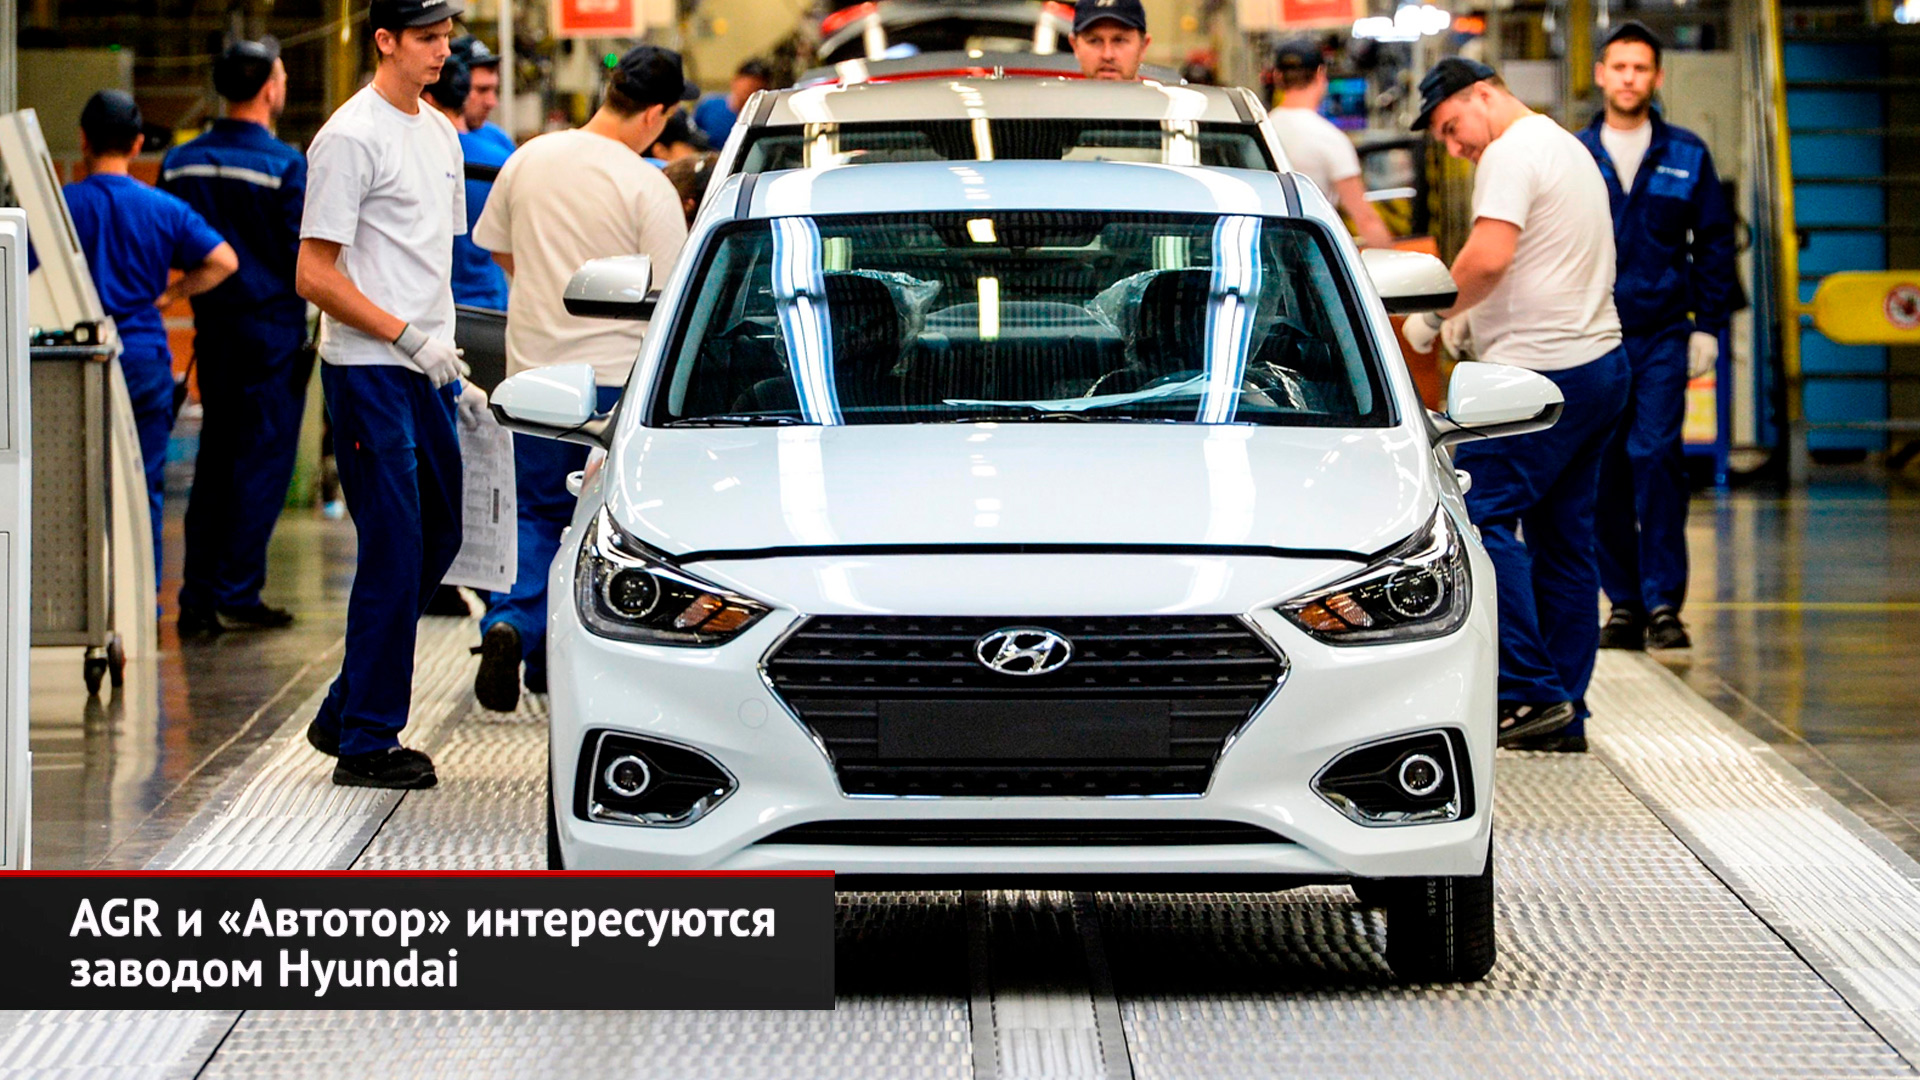 Завод Hyundai обещают перезапустить. Aurus Komendant защитится бронёй | Новости с колёс №2621